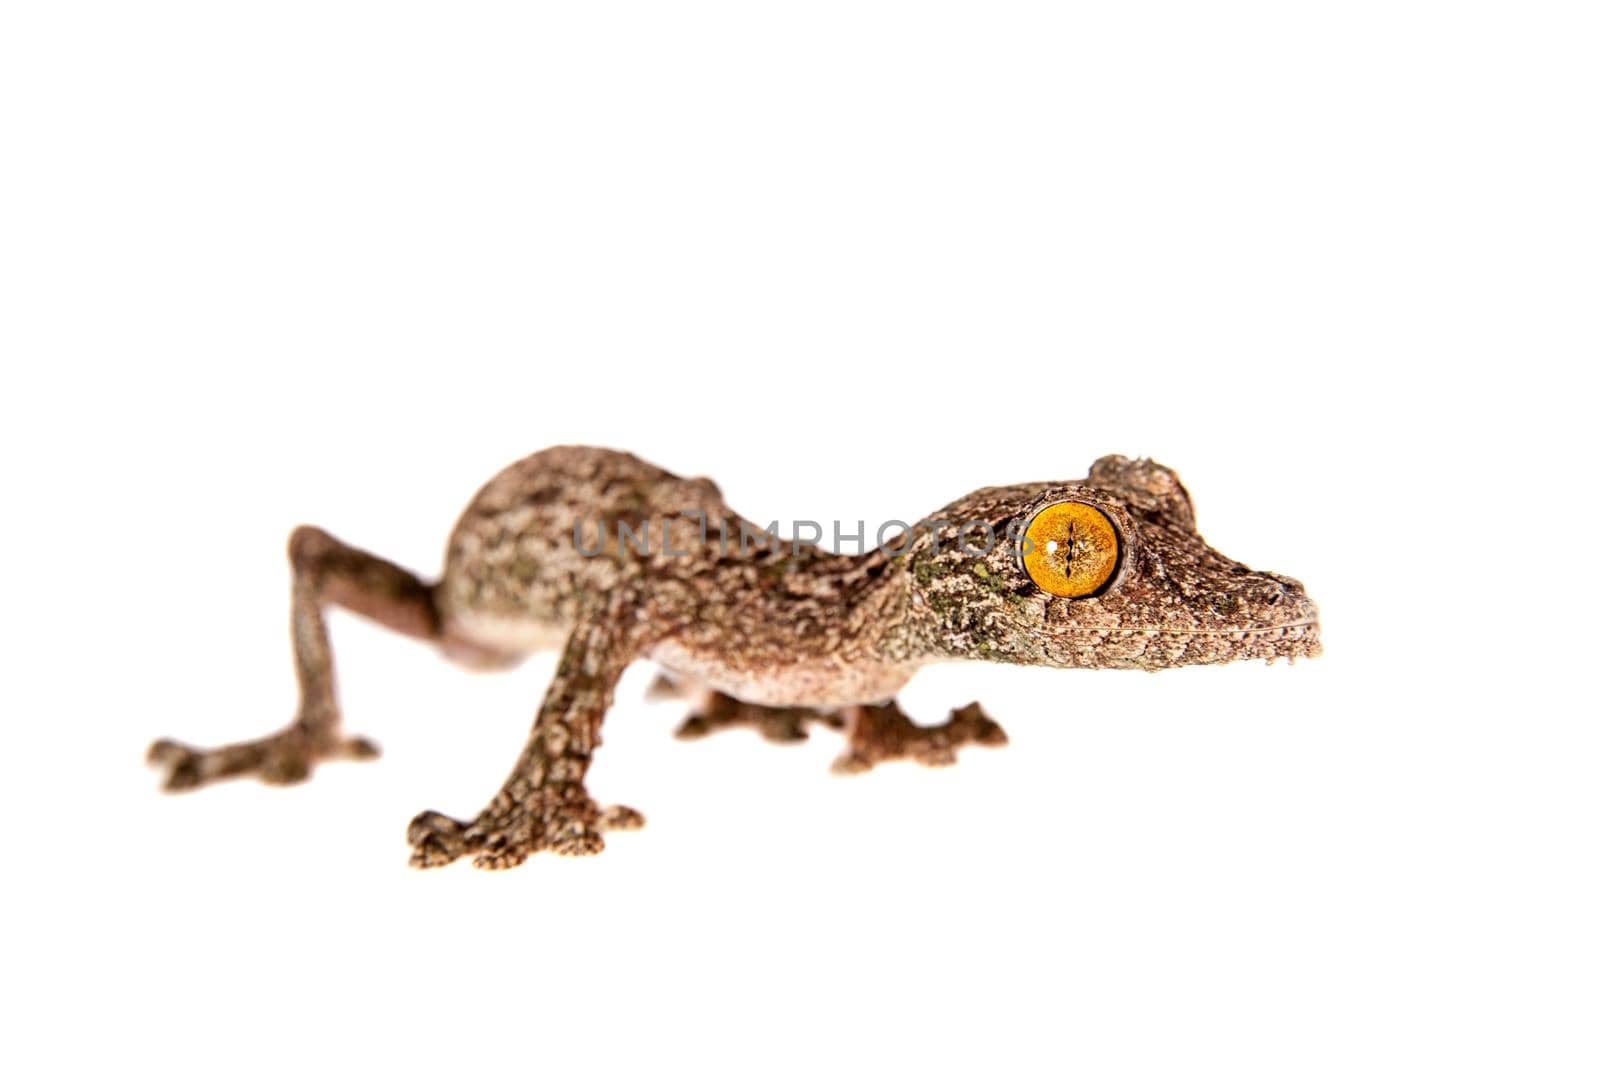 Leaf-tailed Gecko, uroplatus sameiti isolated on white background